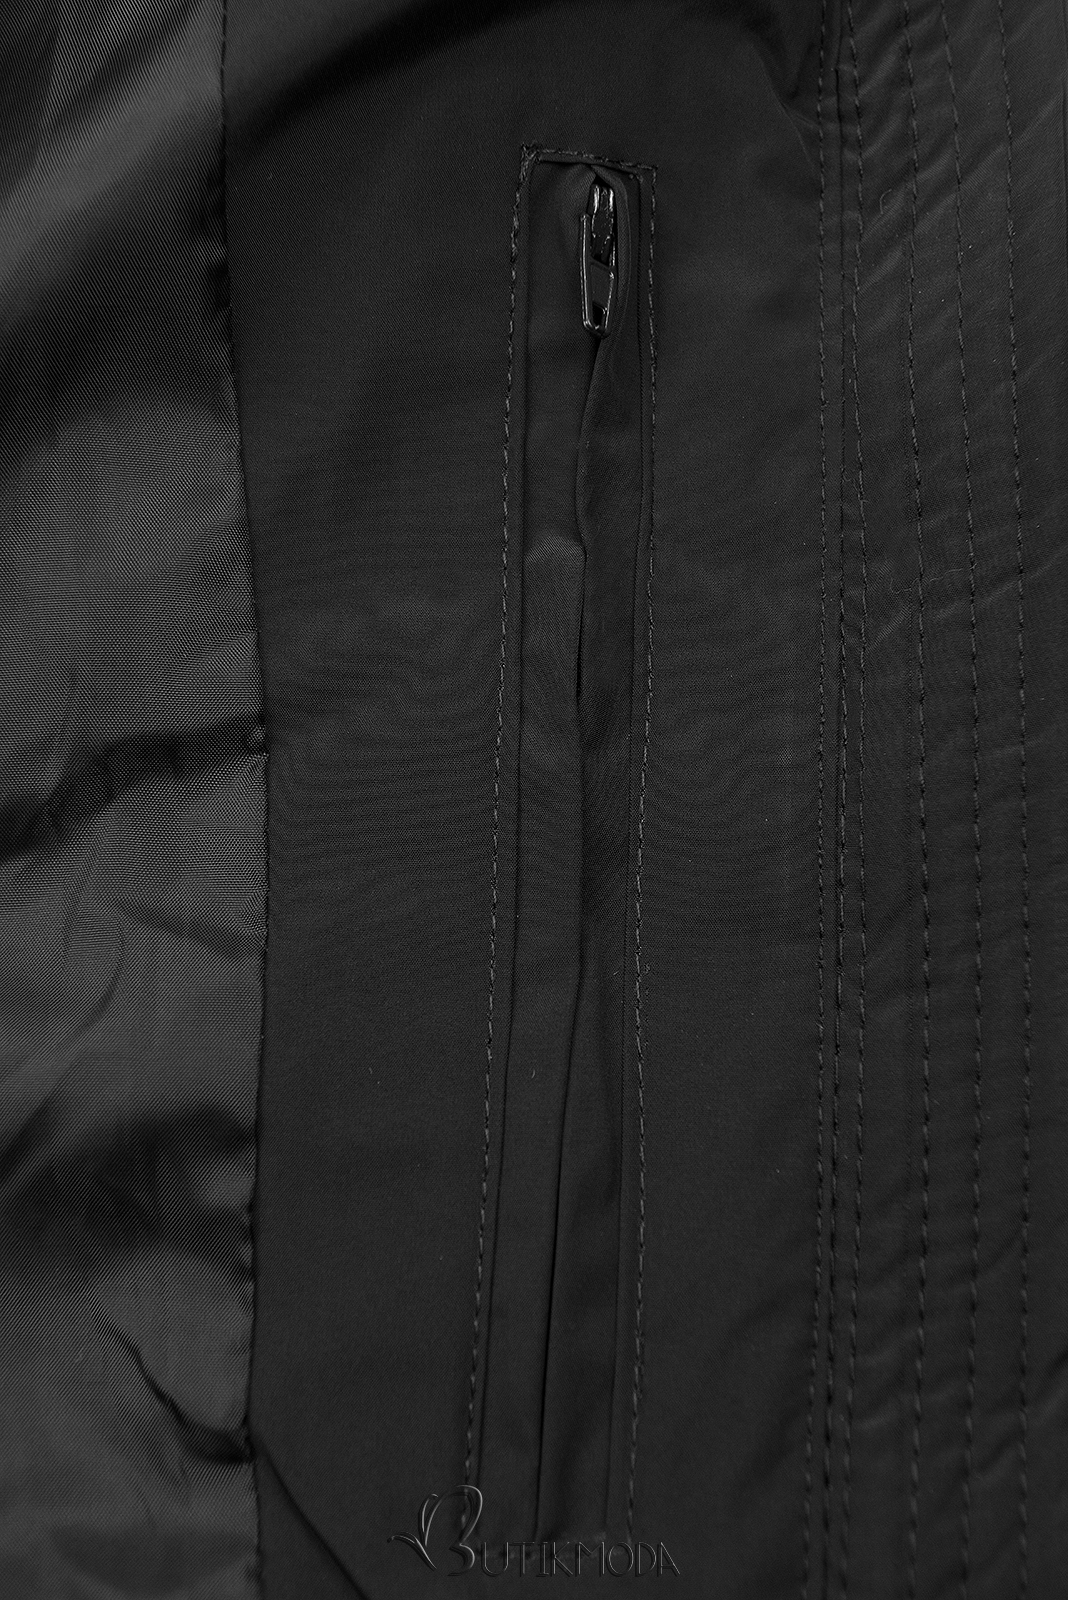 Fekete színű teli kabát hosszított fazonban